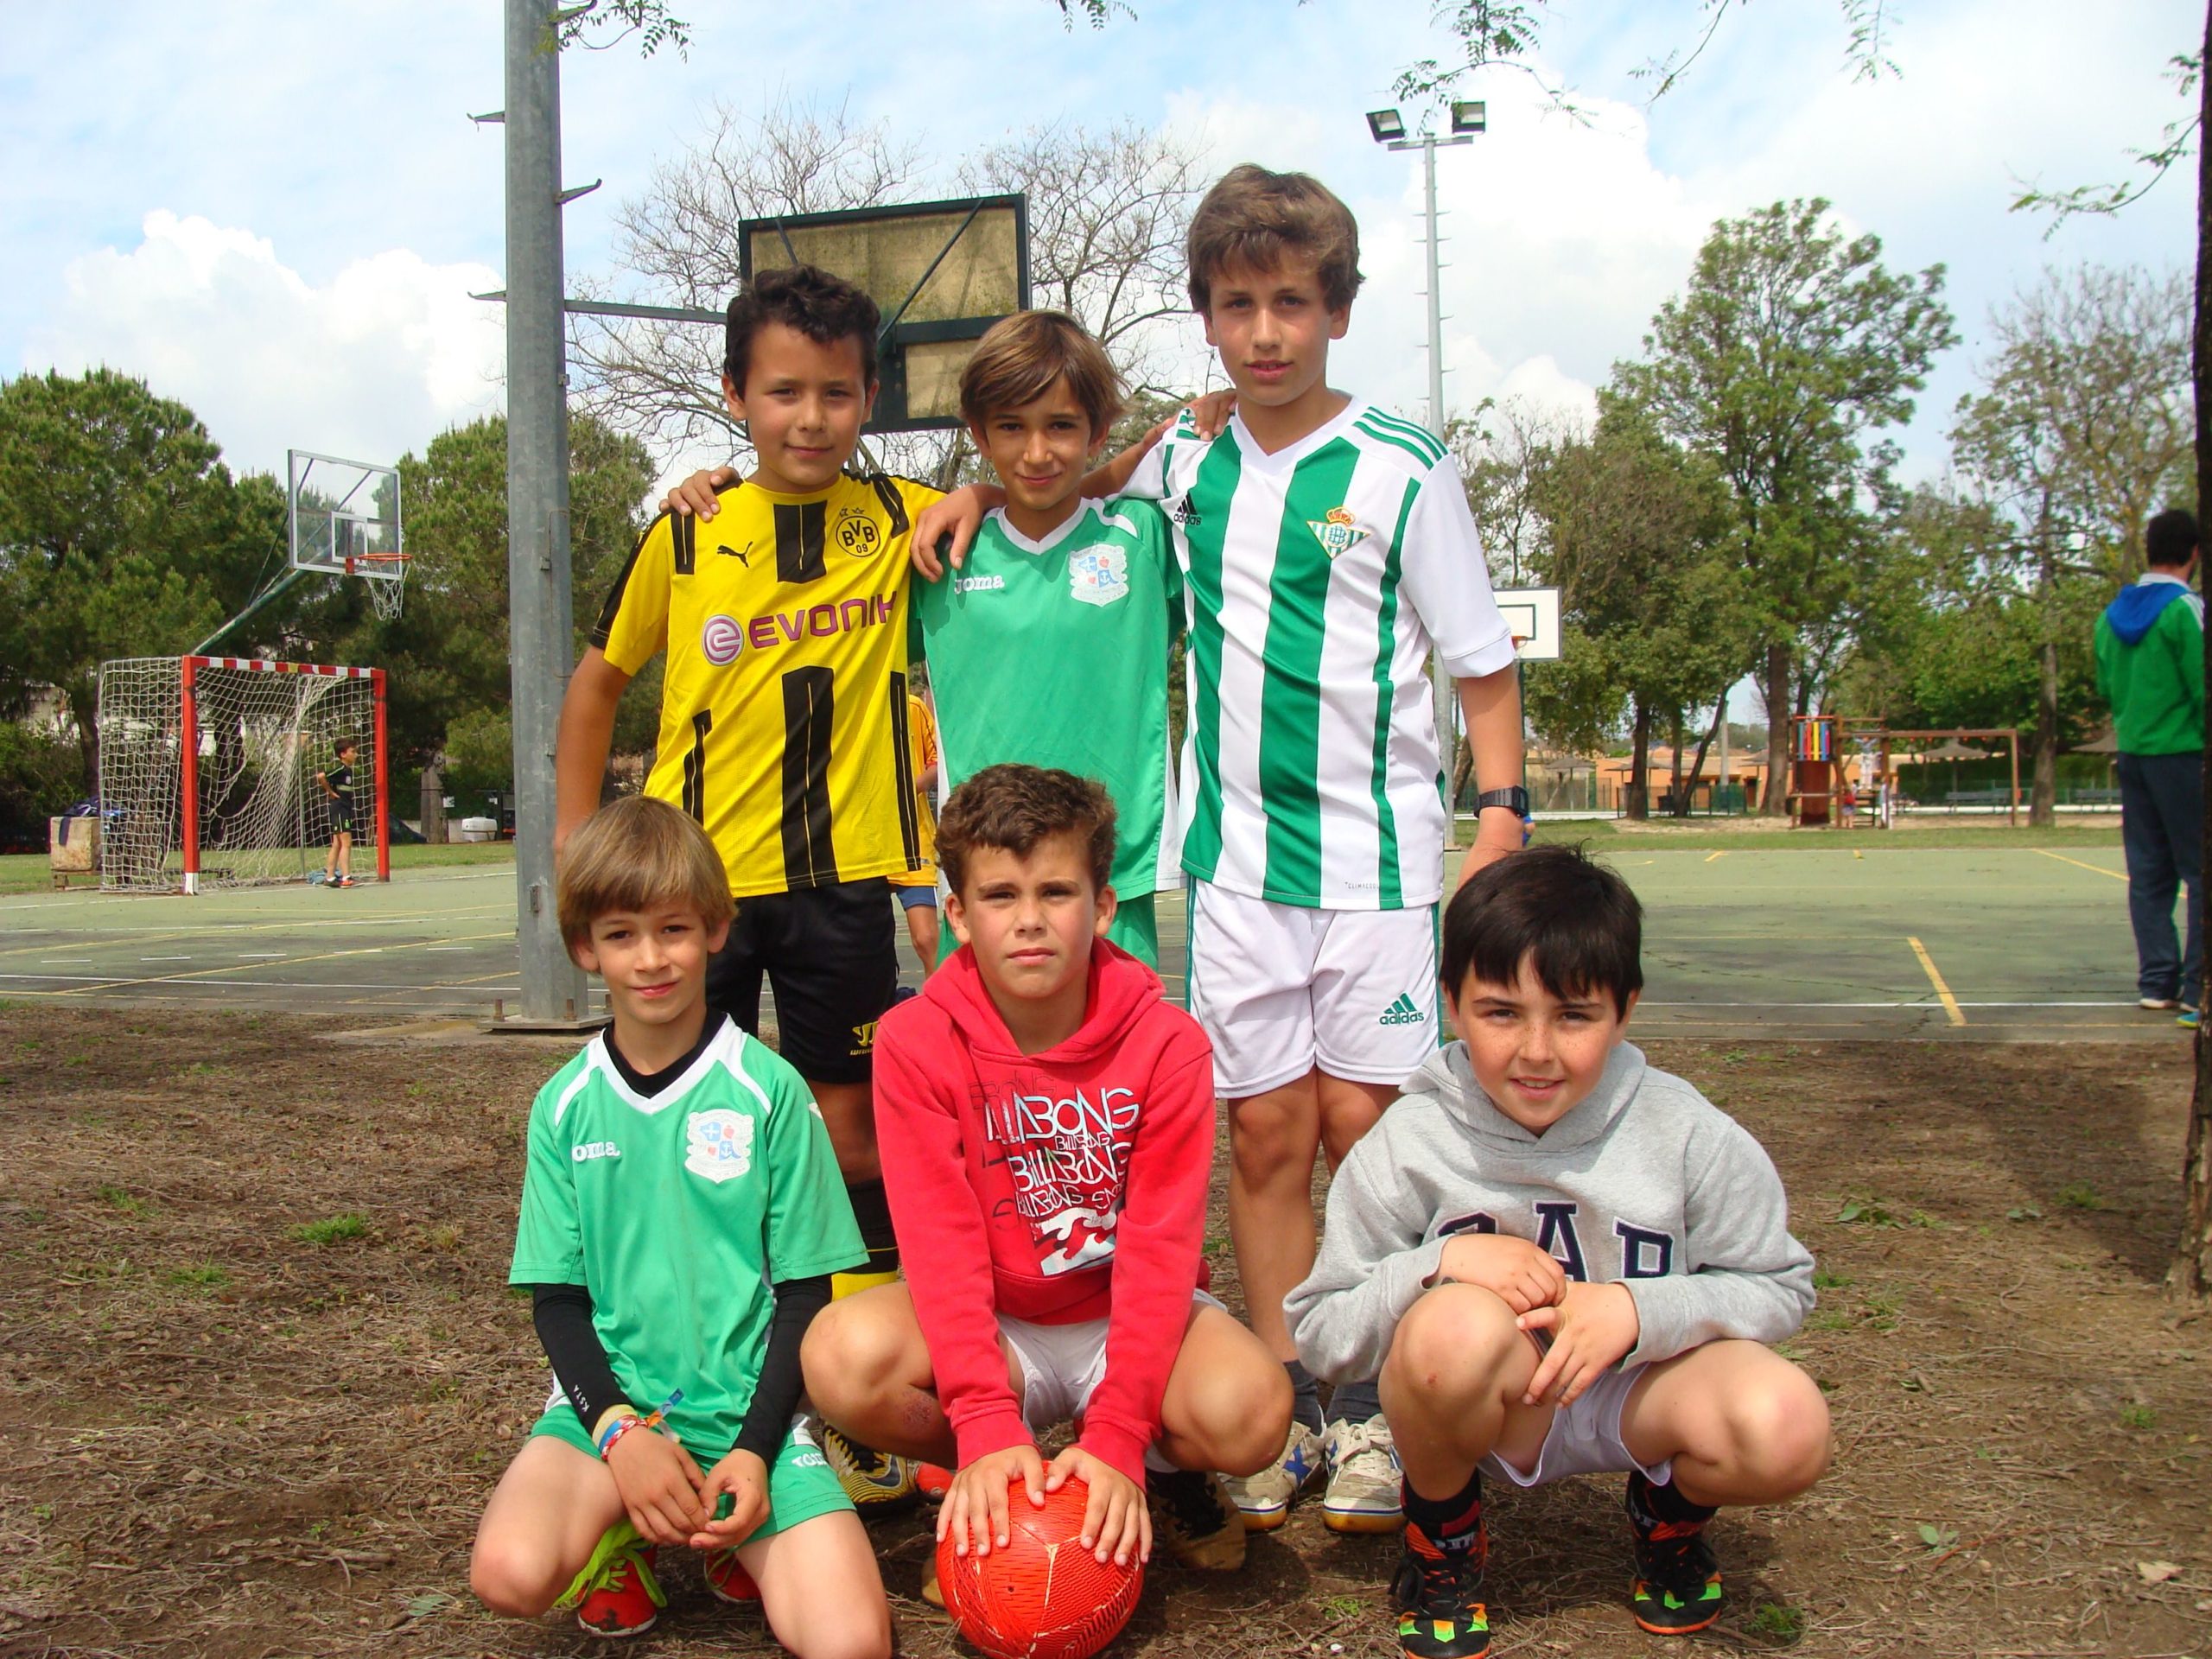 Puente de mayo lleno de Actividades Infantiles: Castillos, Talleres, Maratones de Fútbol…